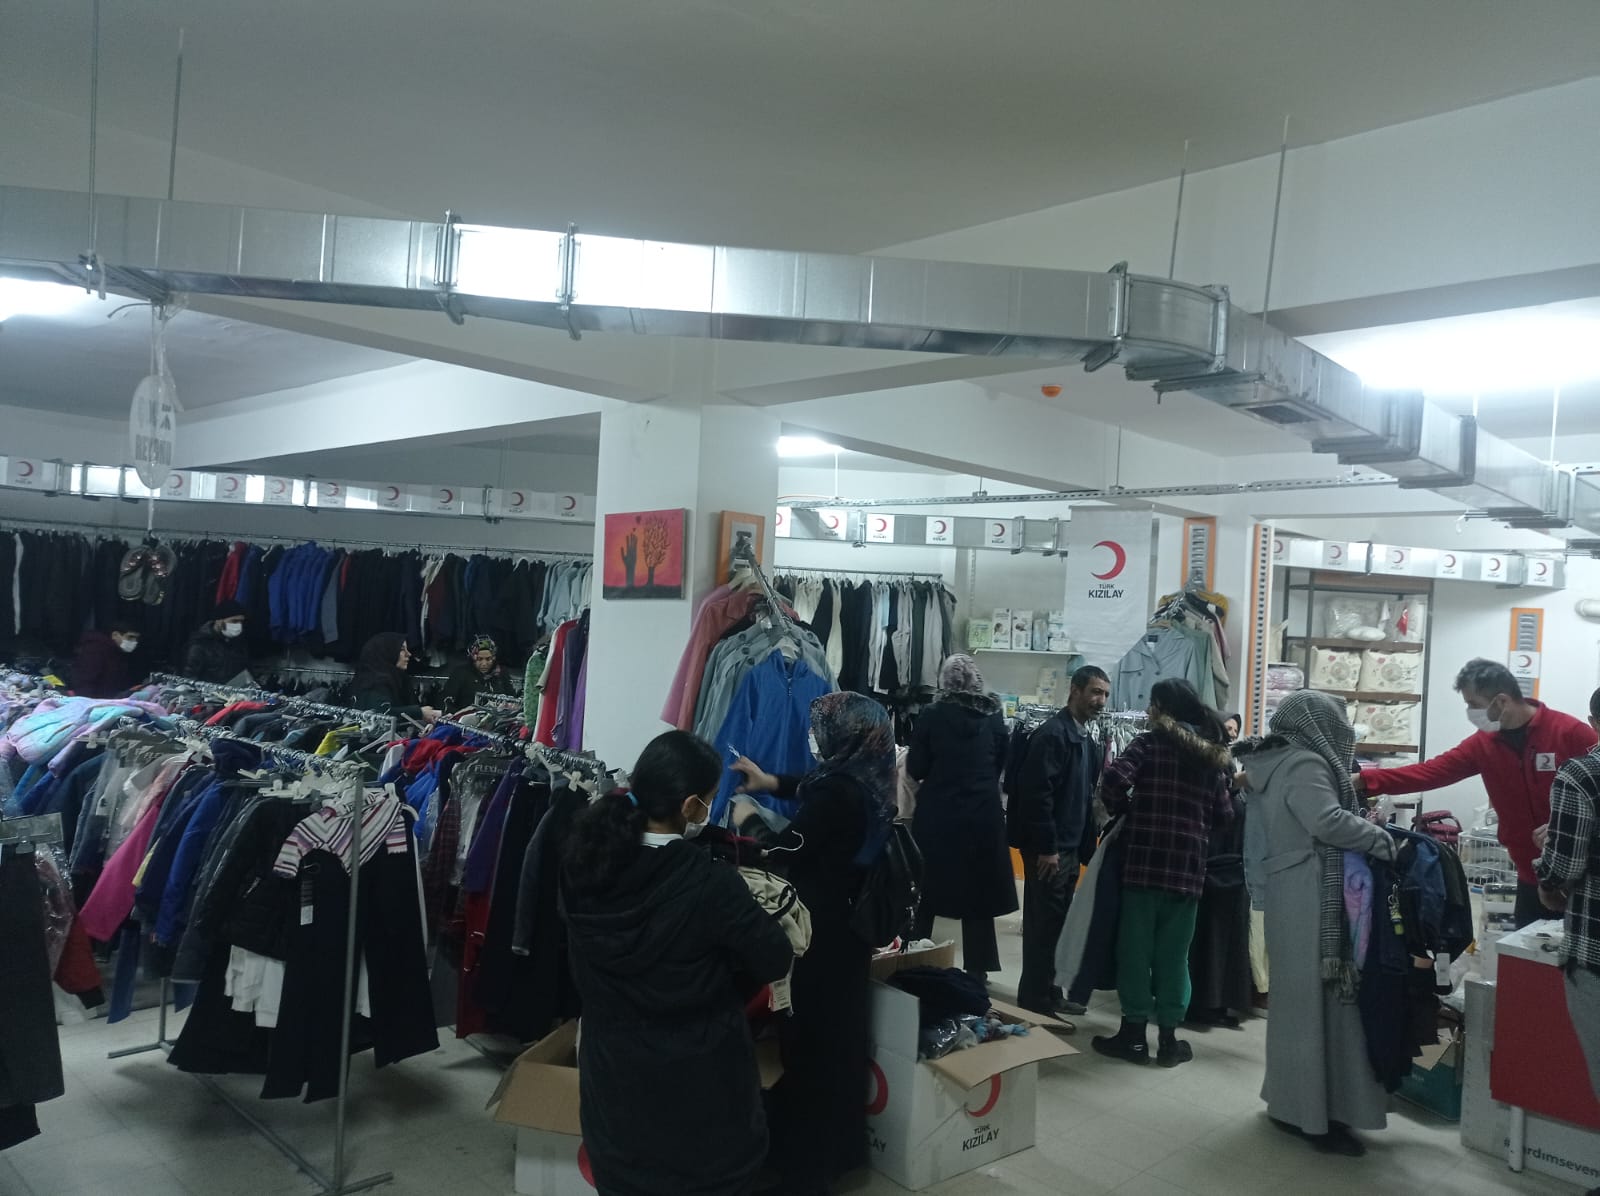 Türk Kızılay Elazığ şubesi olarak ihtiyaç sahiplerimiz için butik mağazamızda kıyafet dağıtımlarımıza devam ediyoruz🌙 (2)